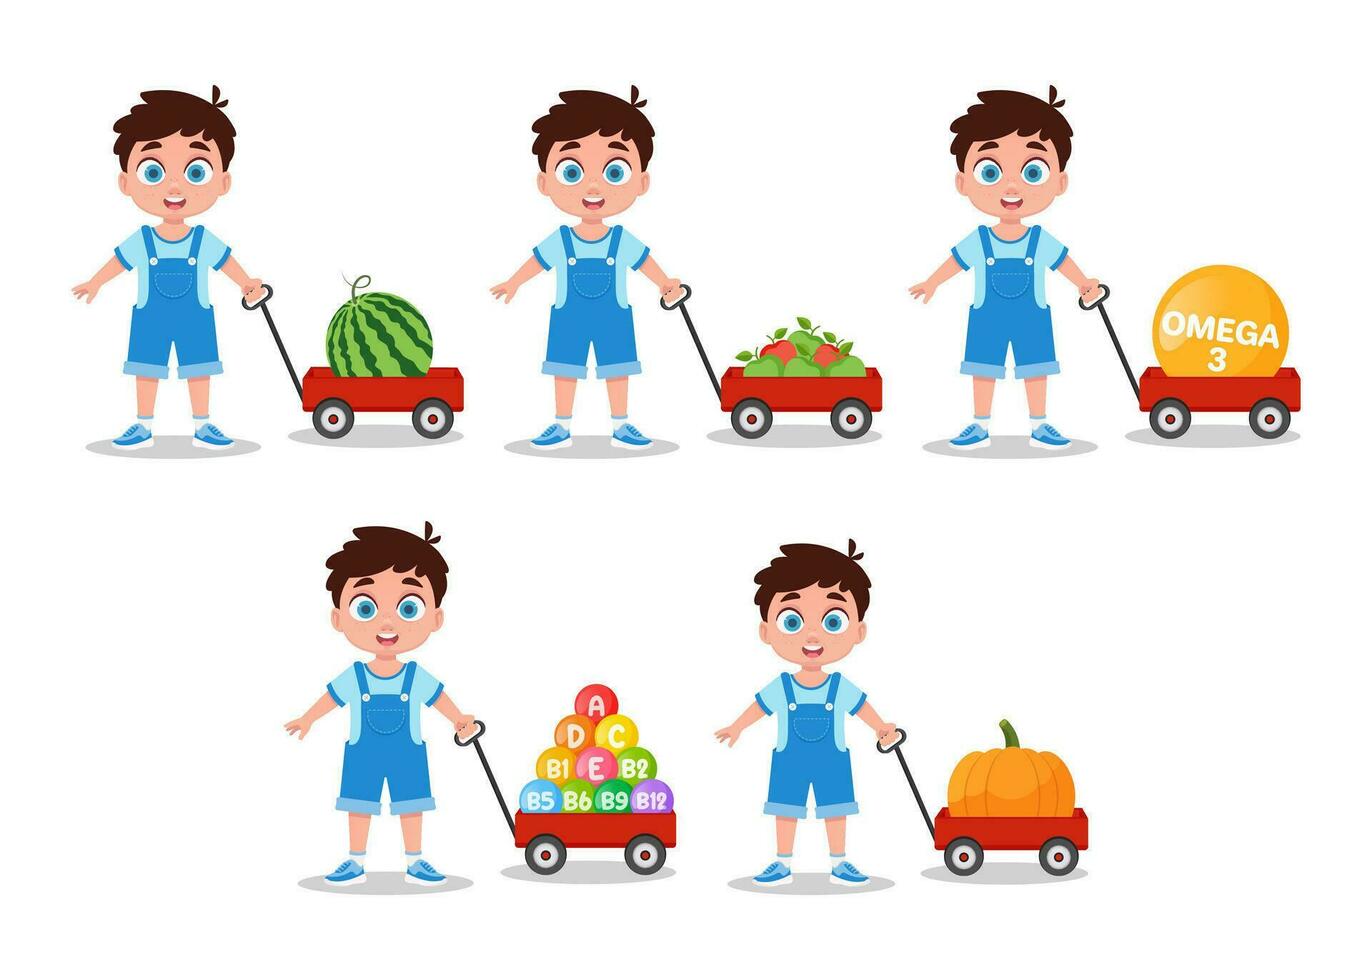 pojke med en röd vagn, röd vagn med vattenmelon, äpplen, pumpa, vitaminer, omega vektor